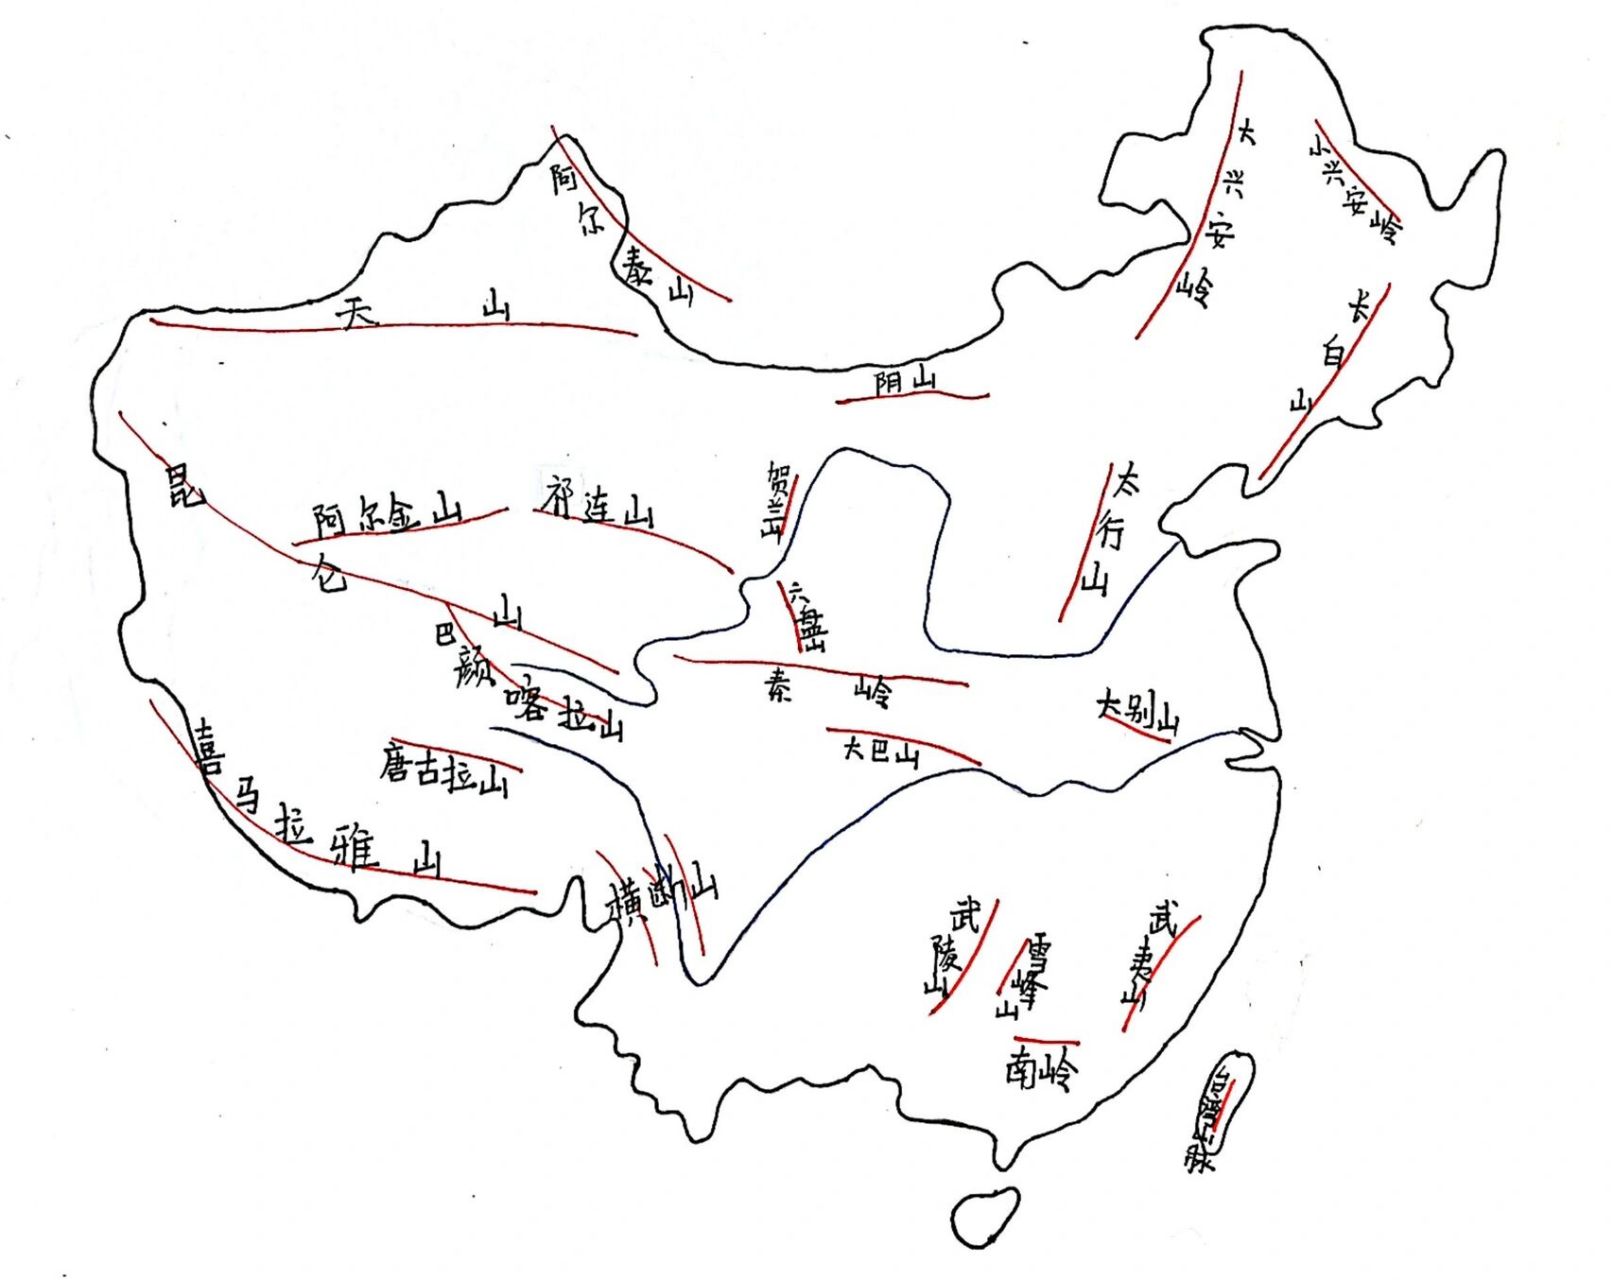 中国山脉与行政区记忆(手绘)